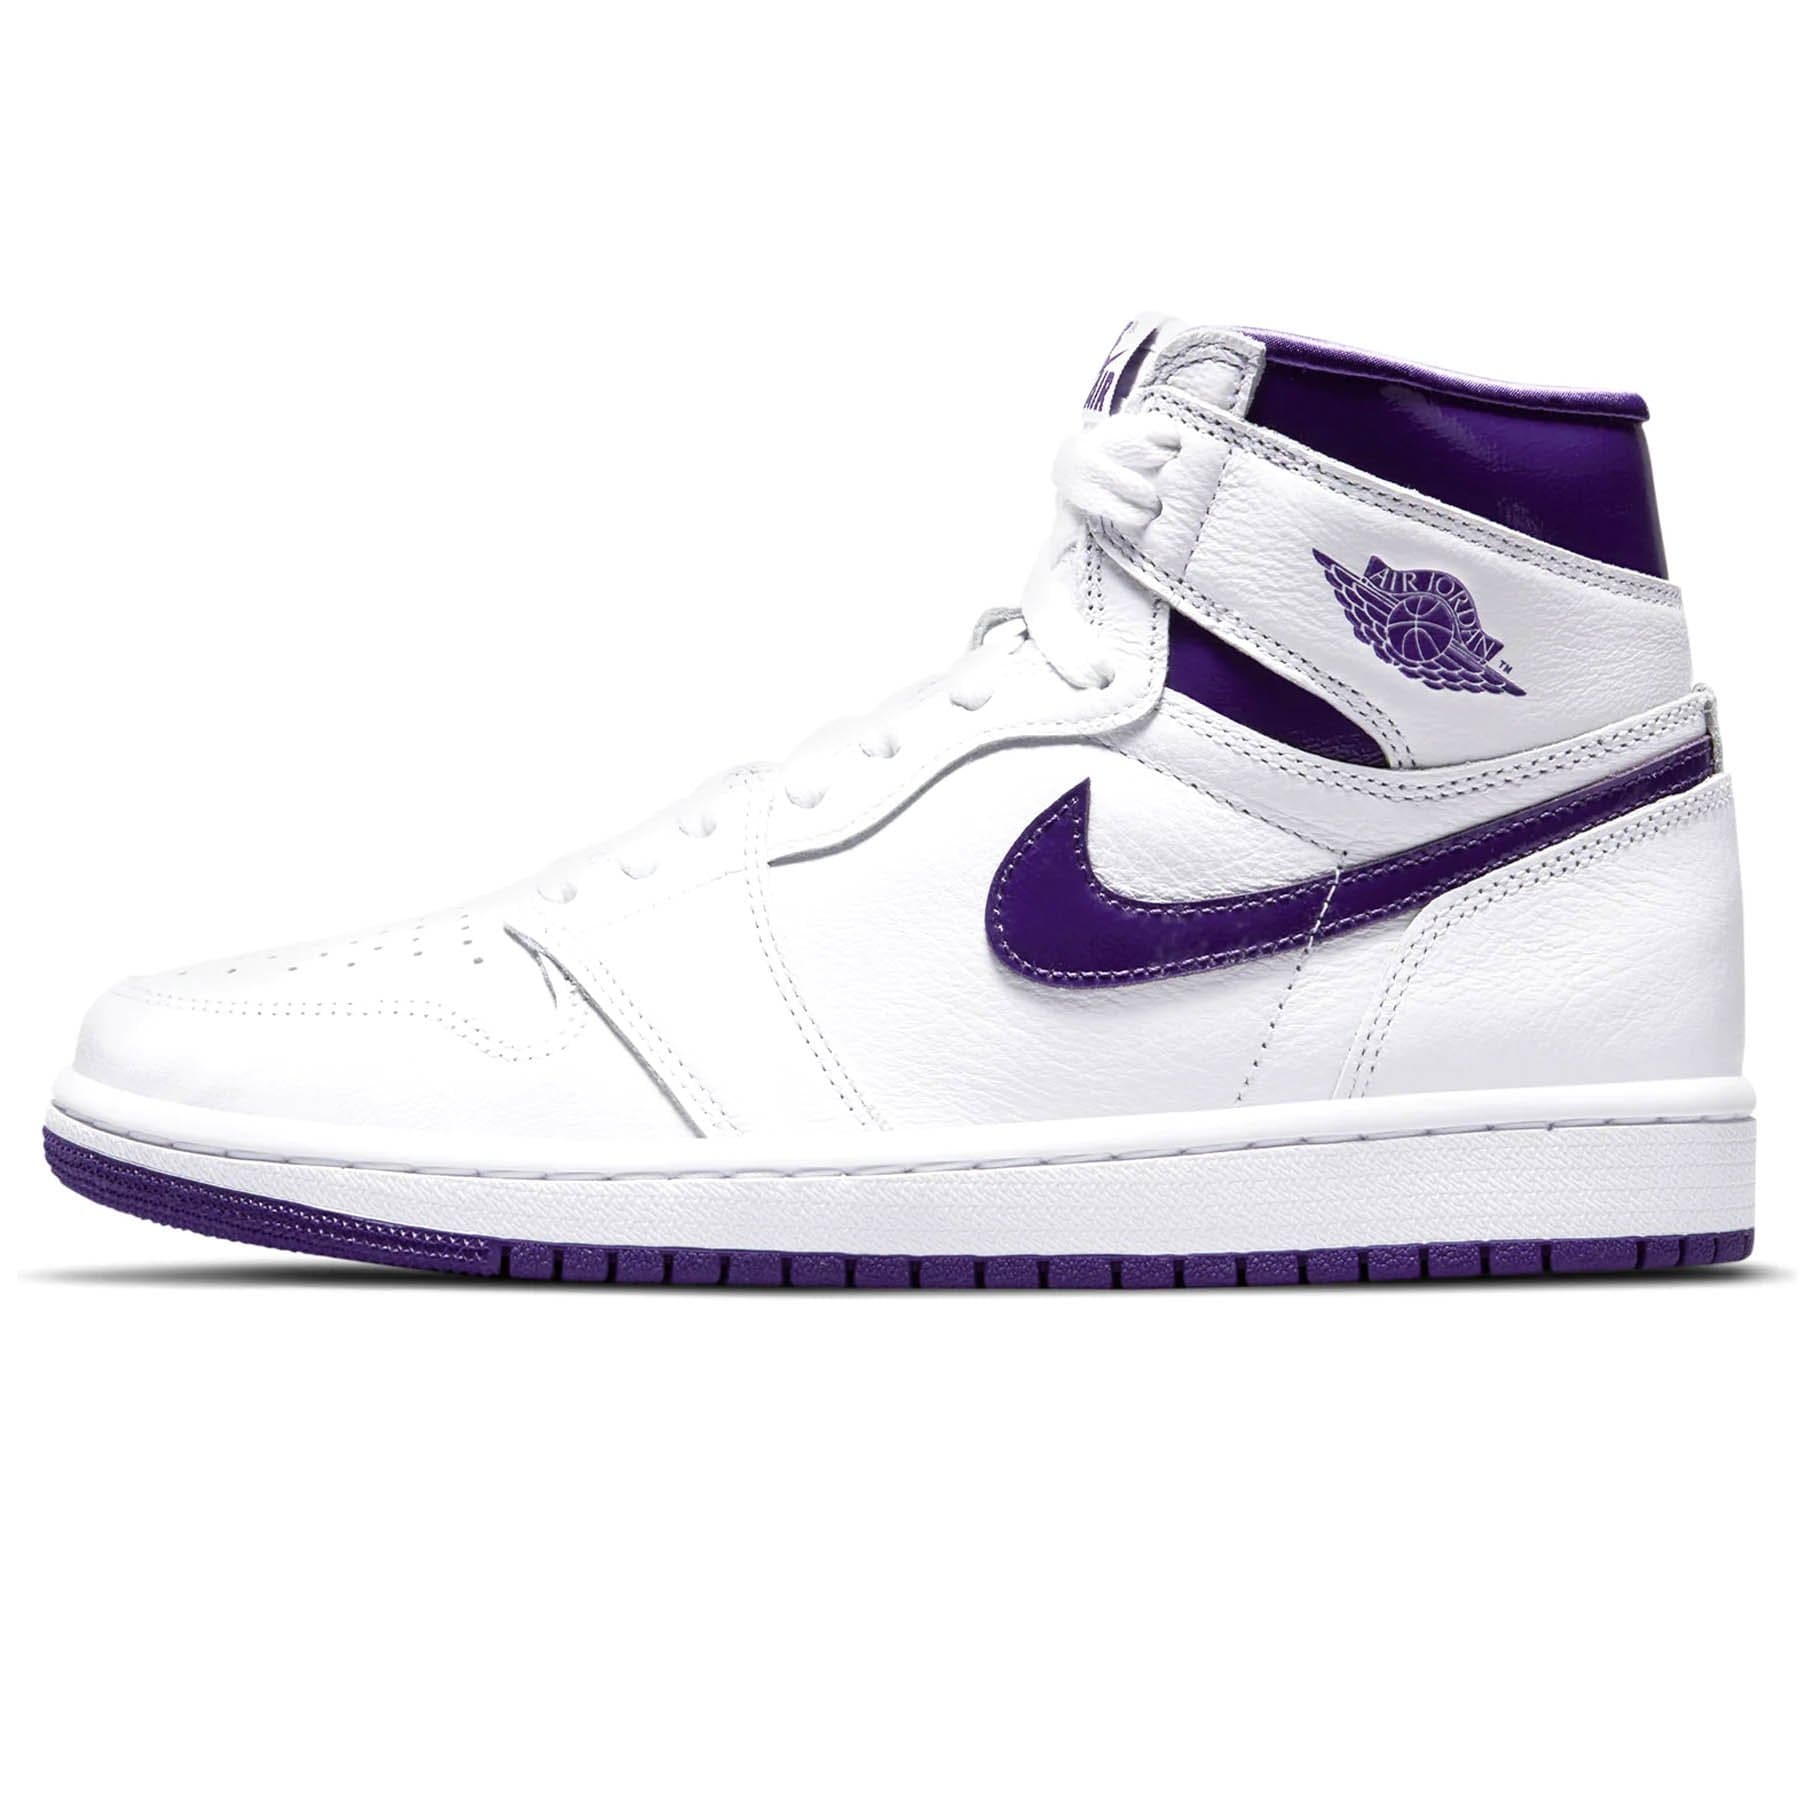 Air Jordan 1 High OG 'Court Purple' (W)